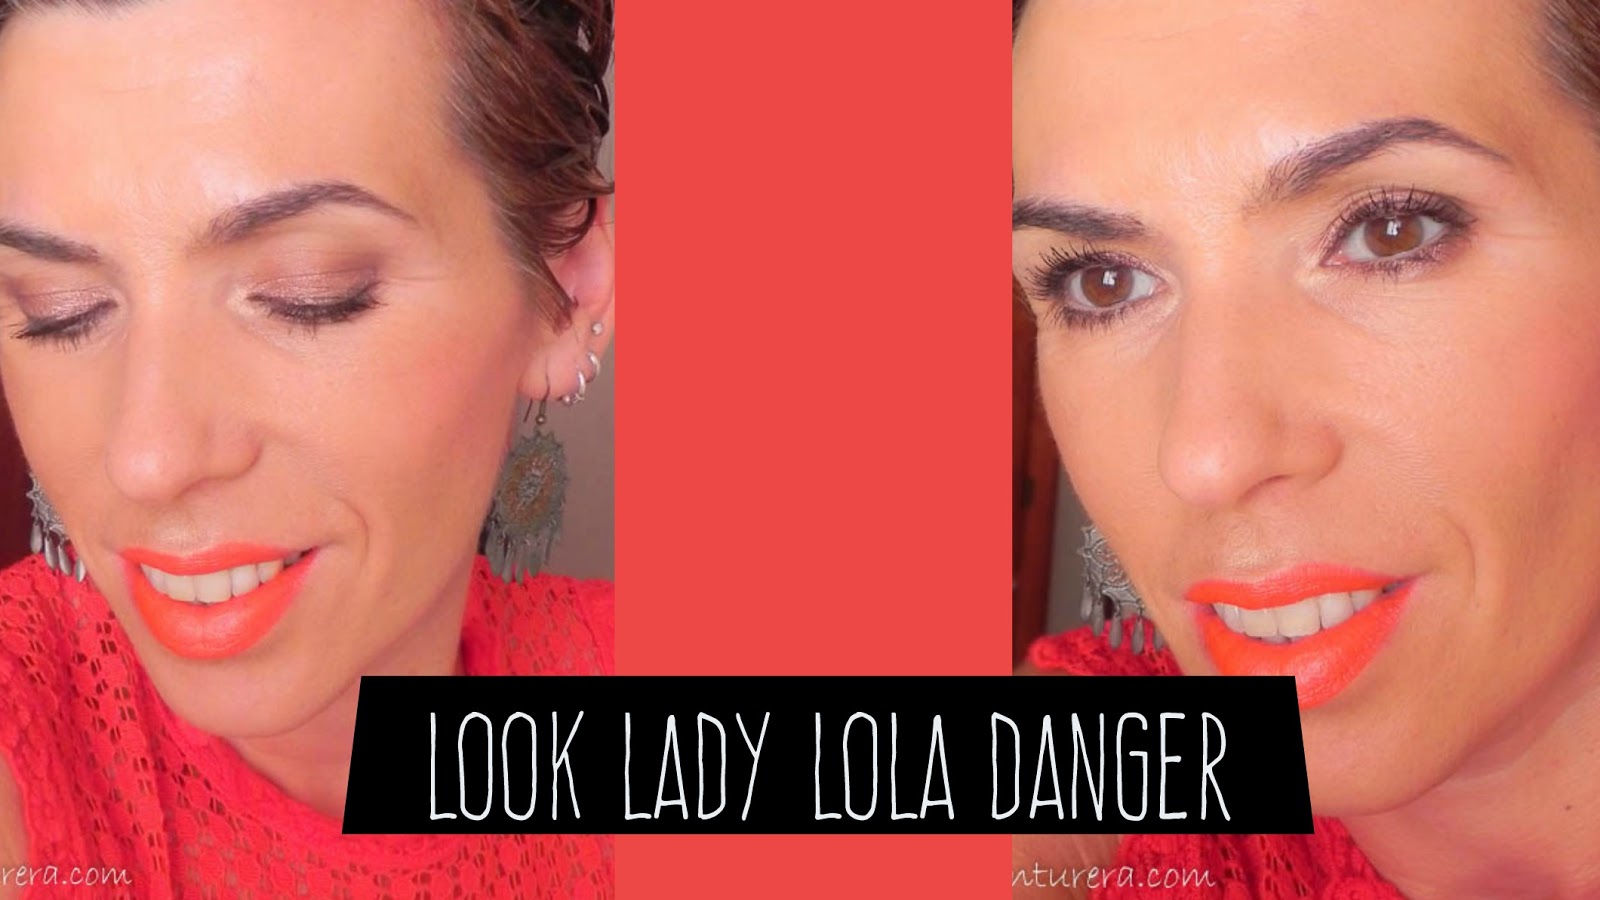 LAPINTURERA - Blog de bienestar emocional, psicología y mucho más.:  Maquillaje de día con labios rojos: Lady Lola Danger + propuesta de moda.